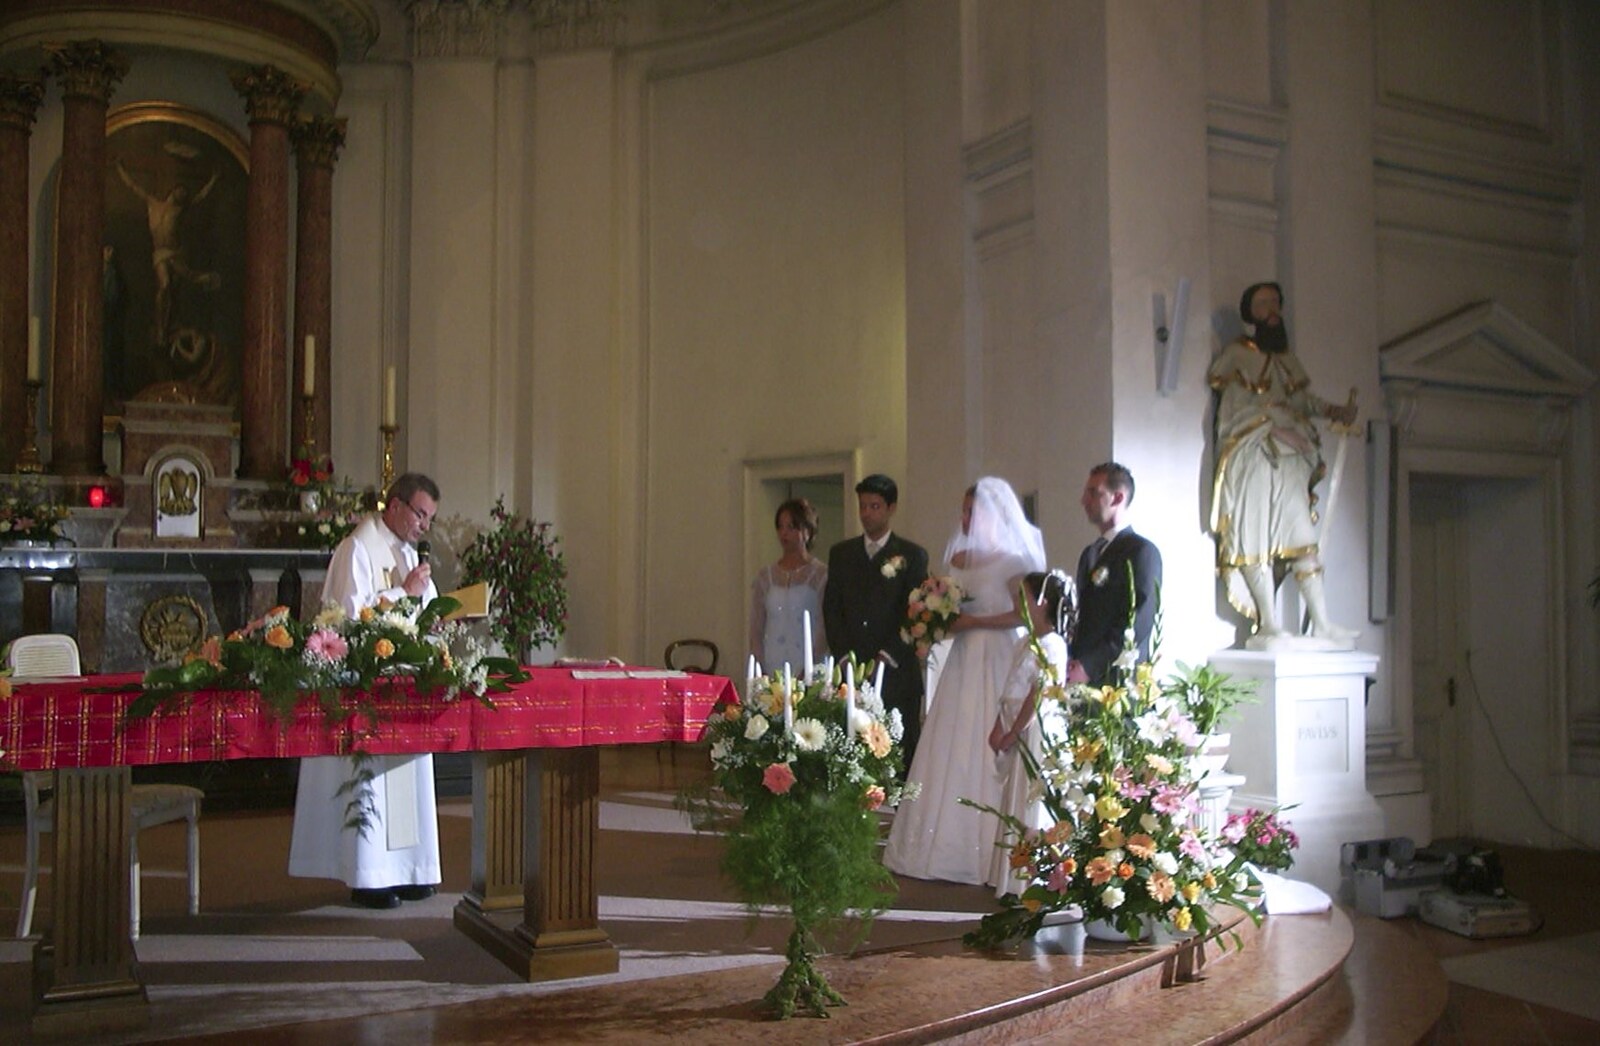 The wedding ceremony commences from Elisa and Luigi's Wedding, Carouge, Geneva, Switzerland - 20th July 2001